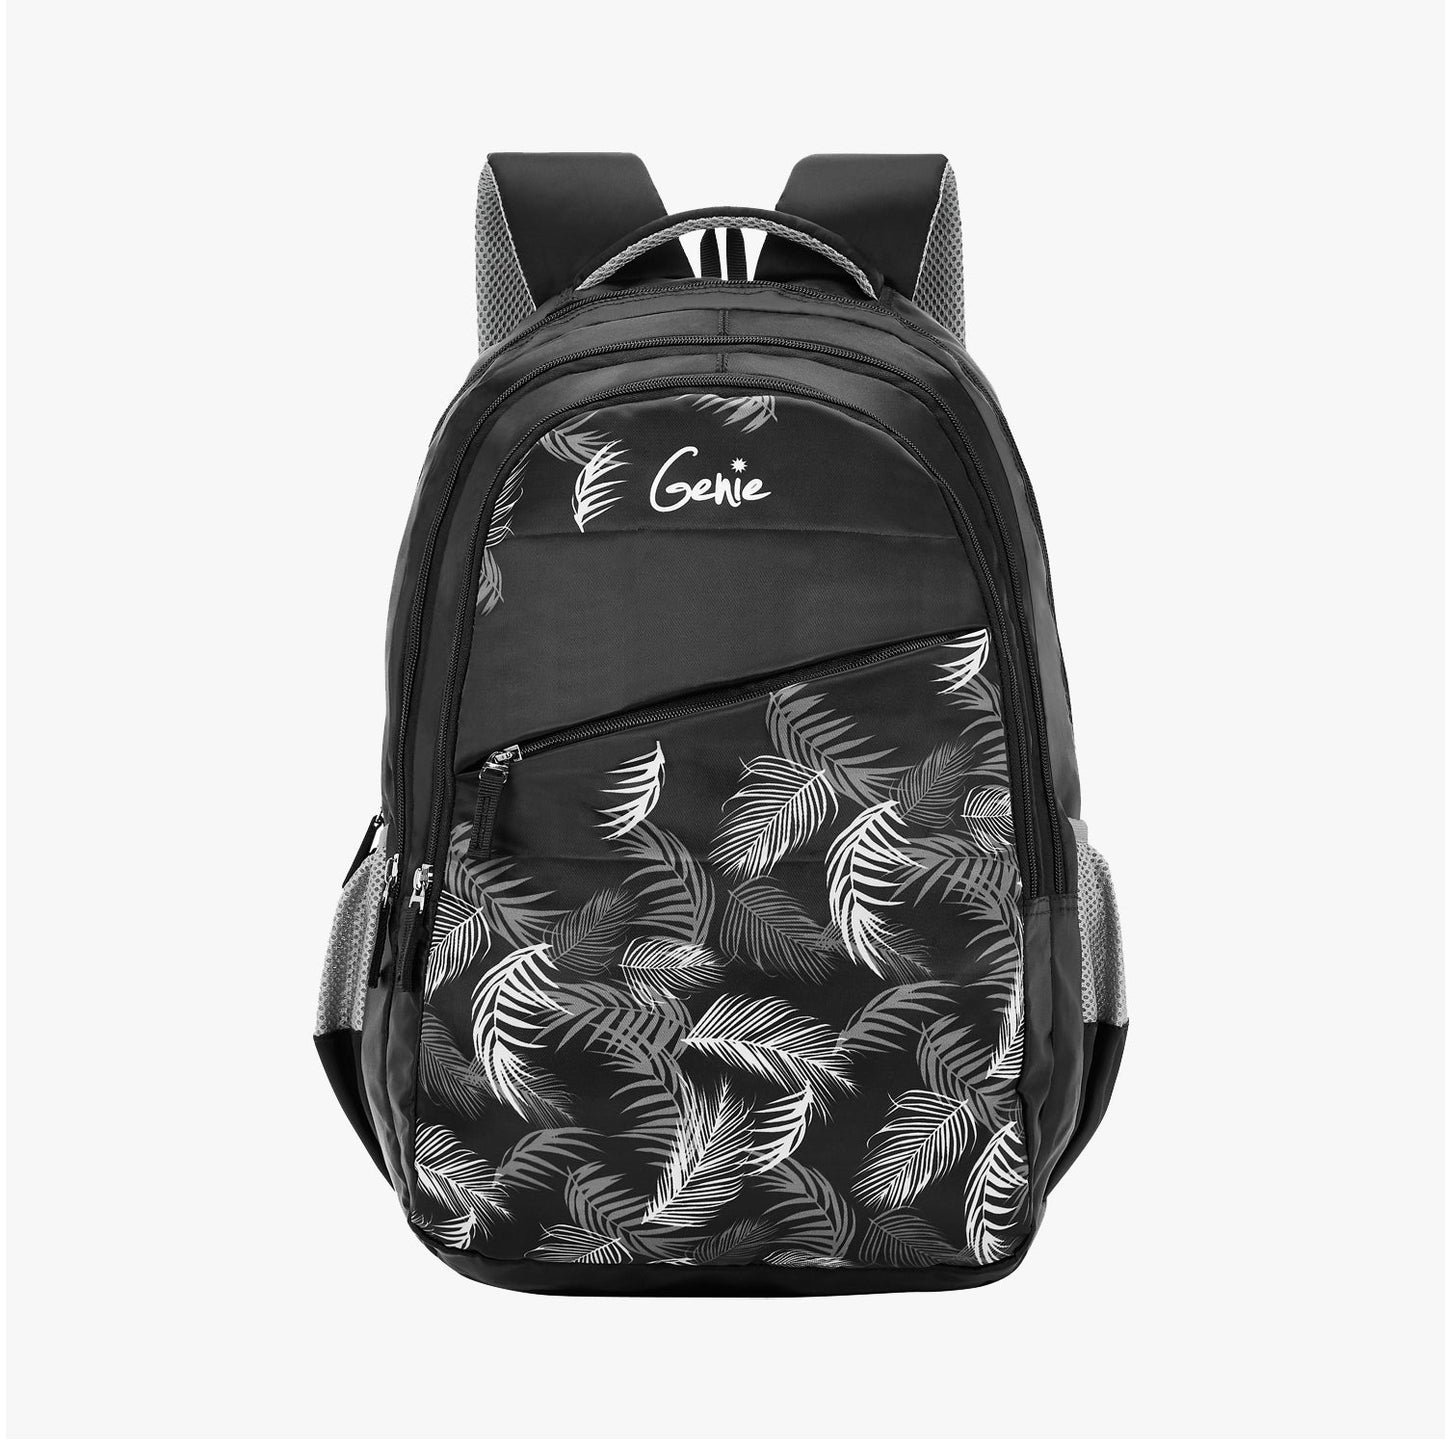 Genie Lush 19 Inch Backpack